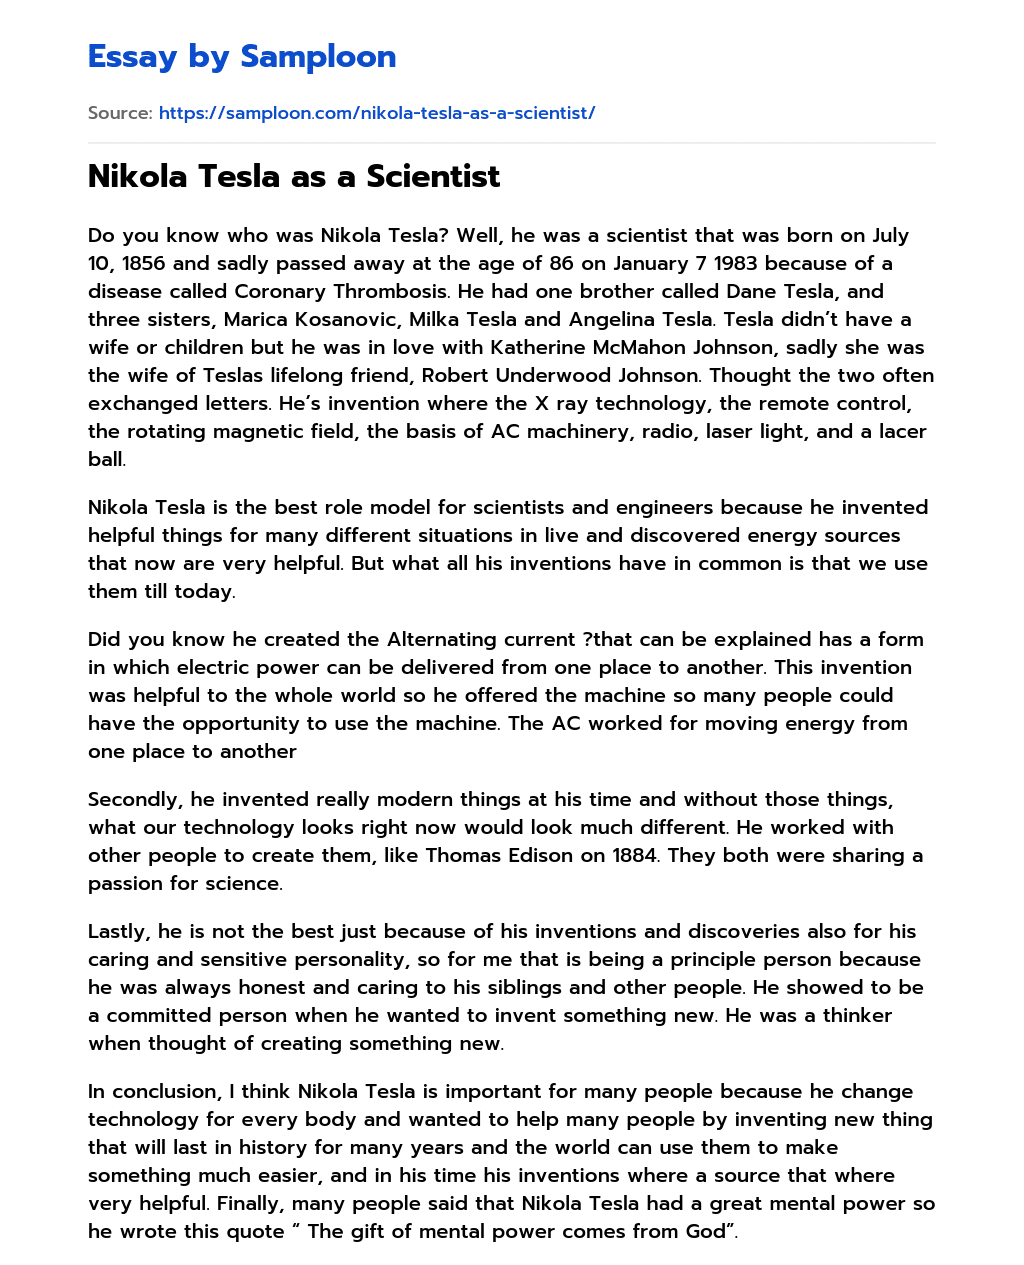 Nikola Tesla as a Scientist essay